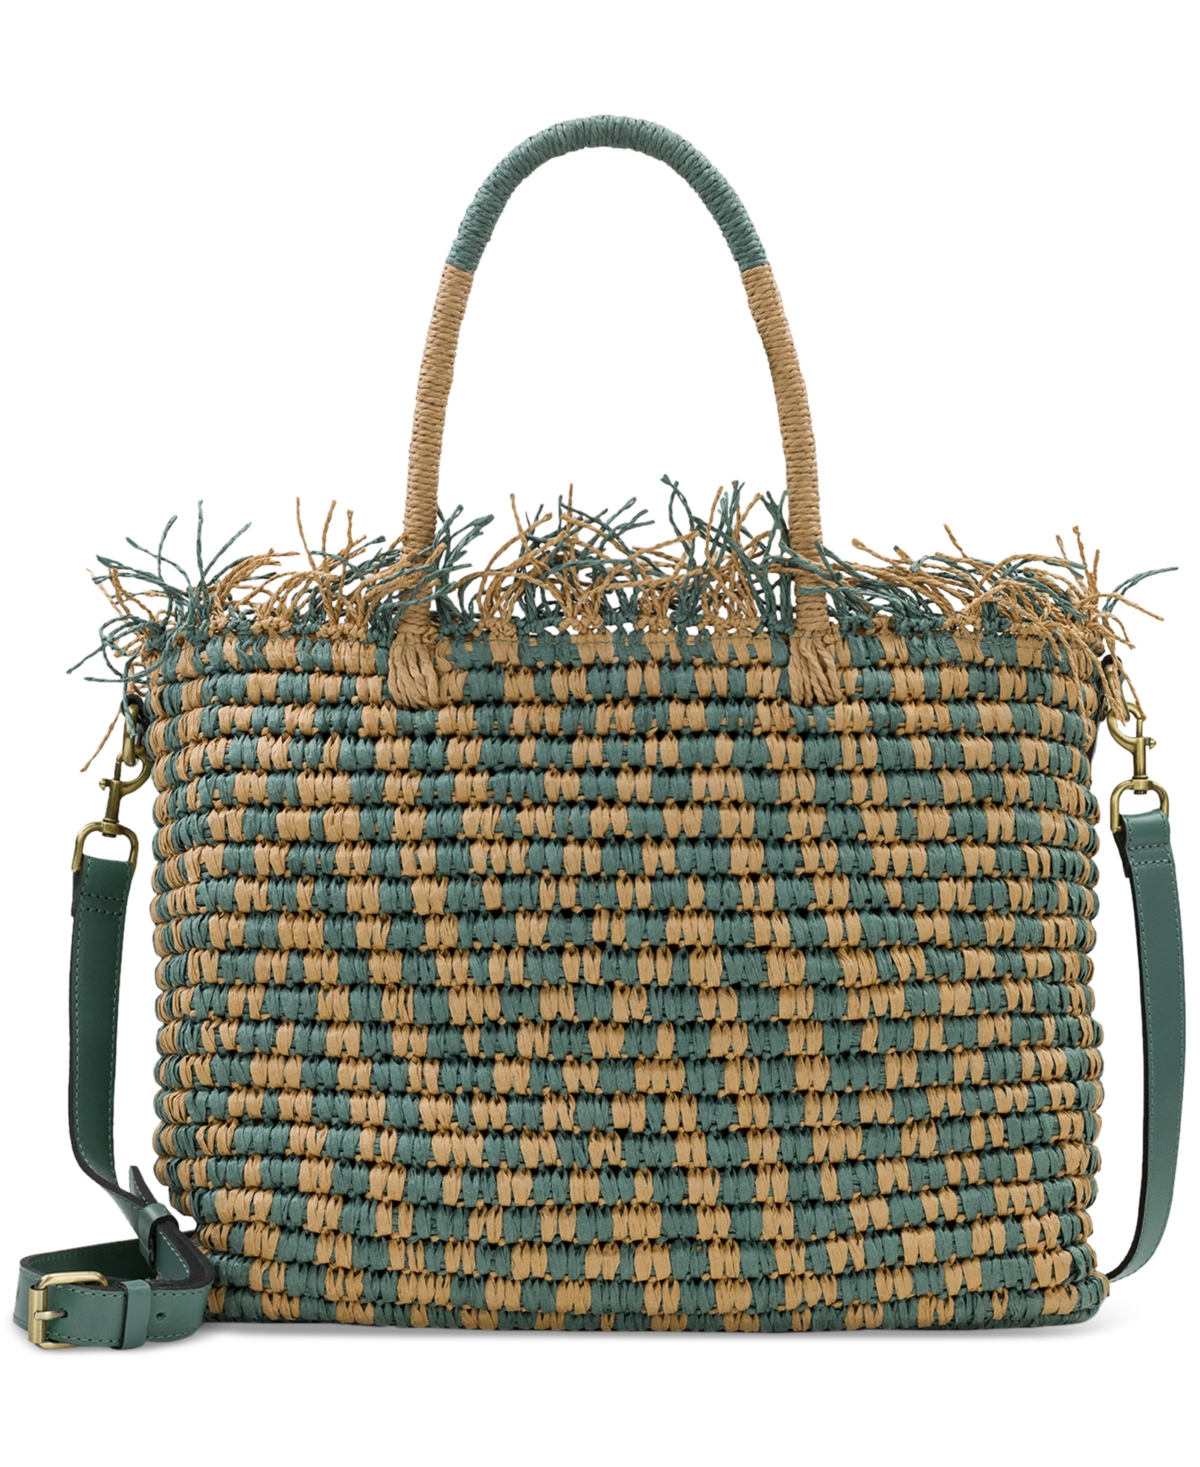 Patricia Nash Villora Medium Straw Top Handle Bag In Sage